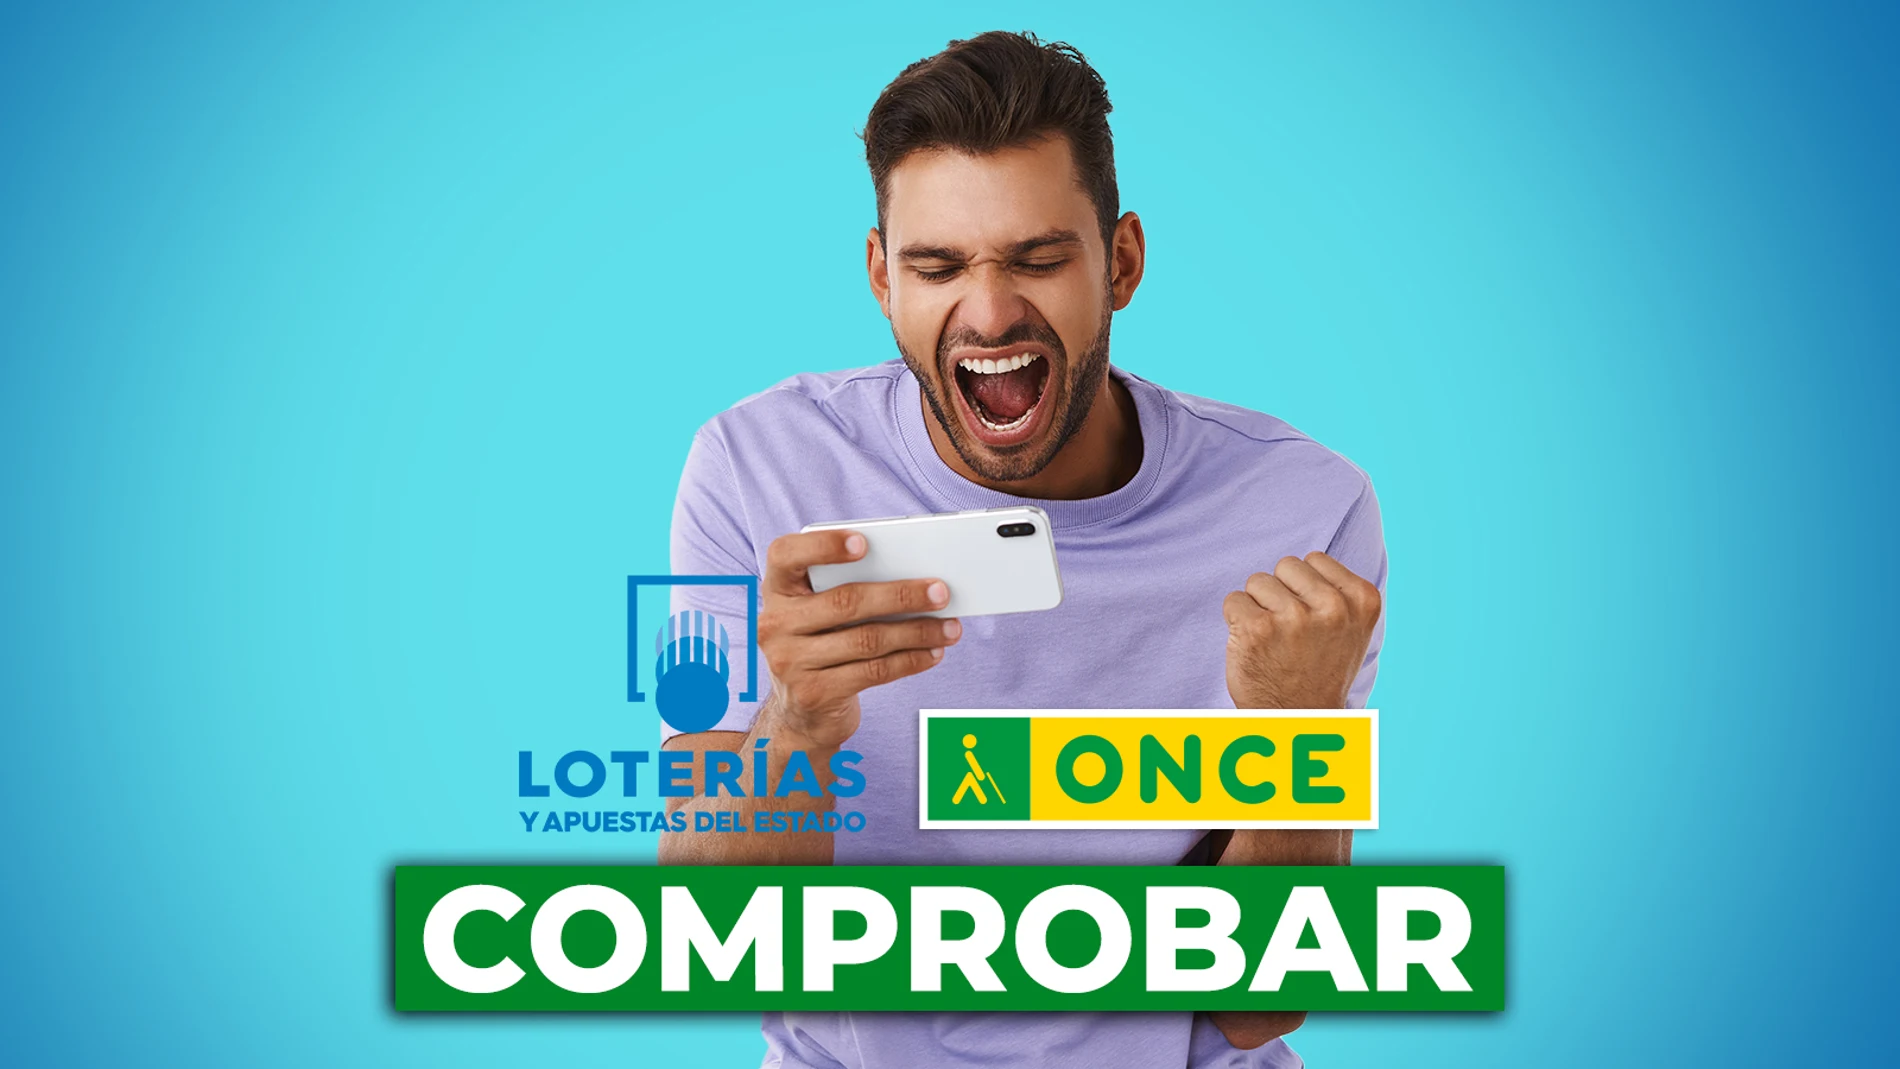 Comprobar los resultados de Lotería: Bonoloto, Euromillones, Cupón, Triplex y Super Once del martes